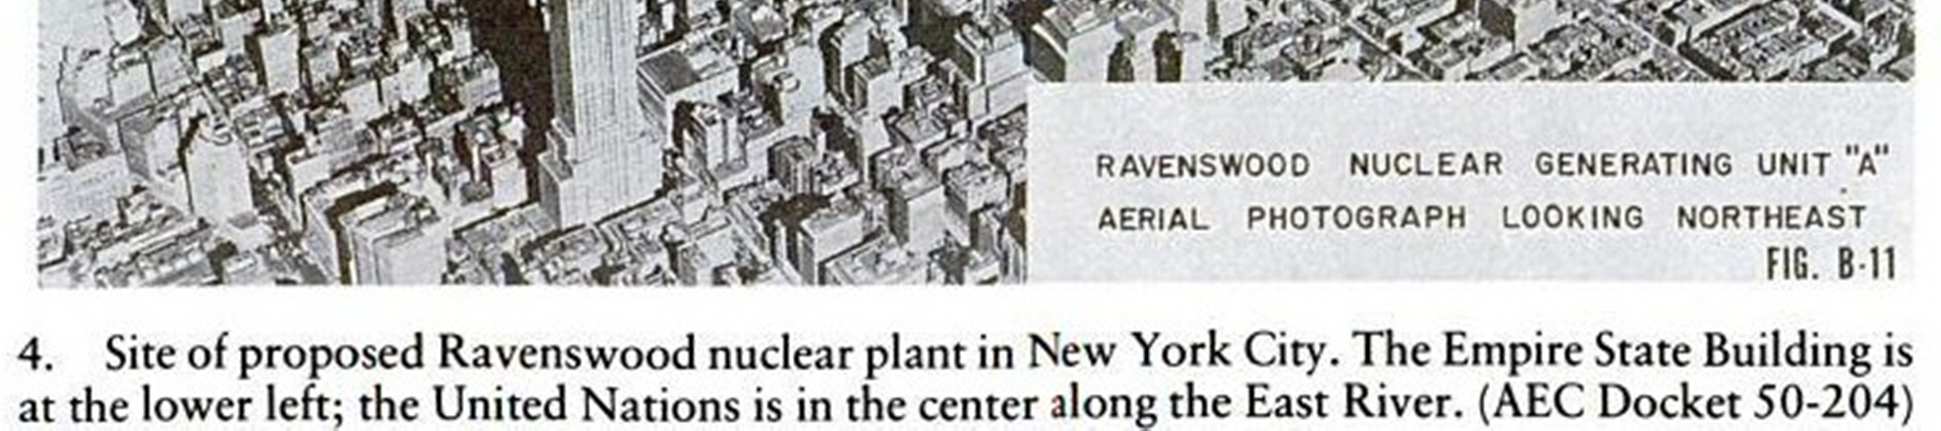 Védőtávolság csökkentése védőépülettel: konténment Első konténmenttel ellátott reaktor: General Electric S1G kutatóreaktor (atomtengeralattjáró prototípus), West Milton, New York Első, hálózatra